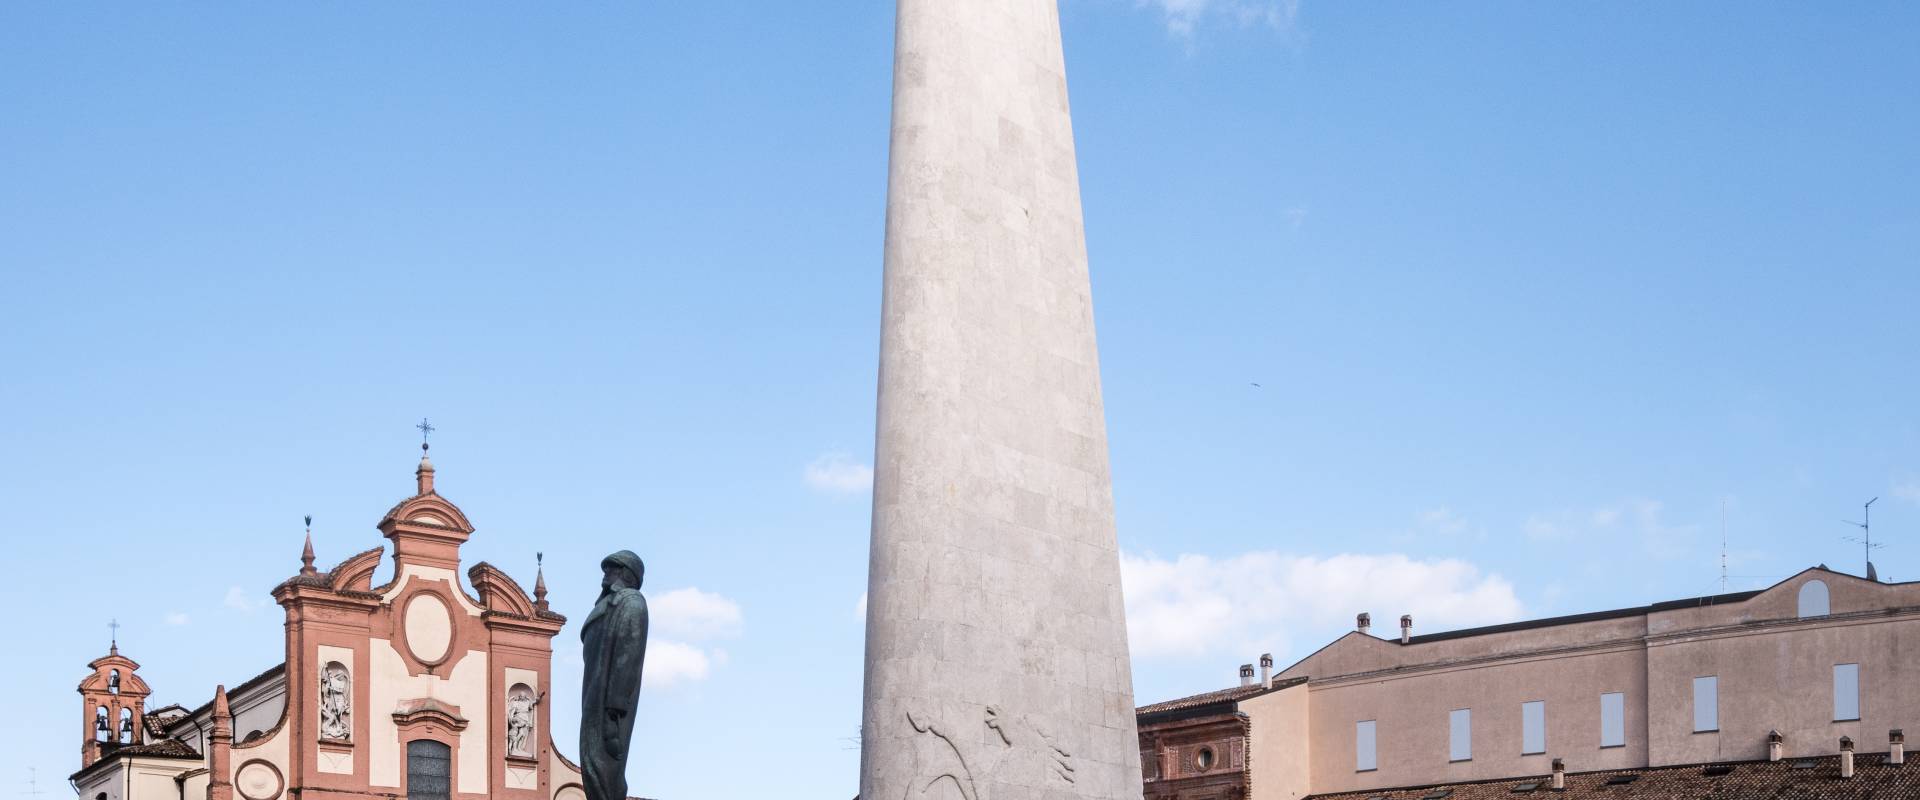 Monumento a Francesco Baracca - Lugo - foto di Vanni Lazzari